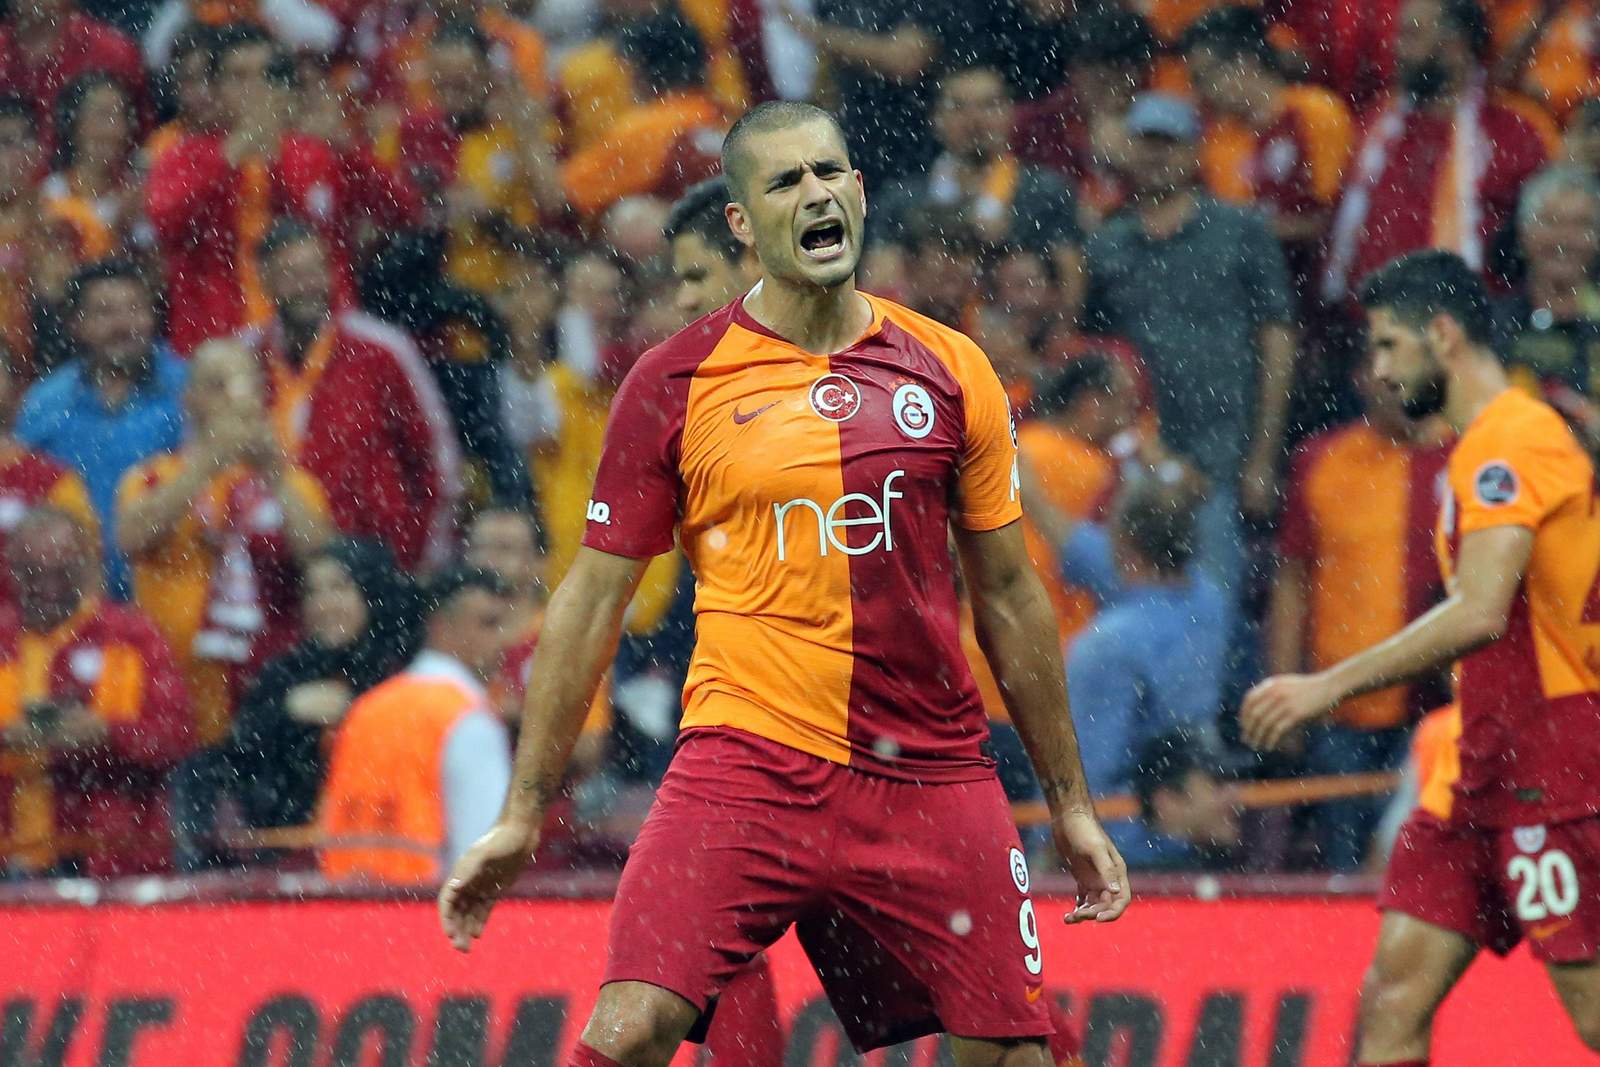 Jubelt Derdiyok wieder? Jetzt auf Galatasaray gegen Lok Moskau wetten